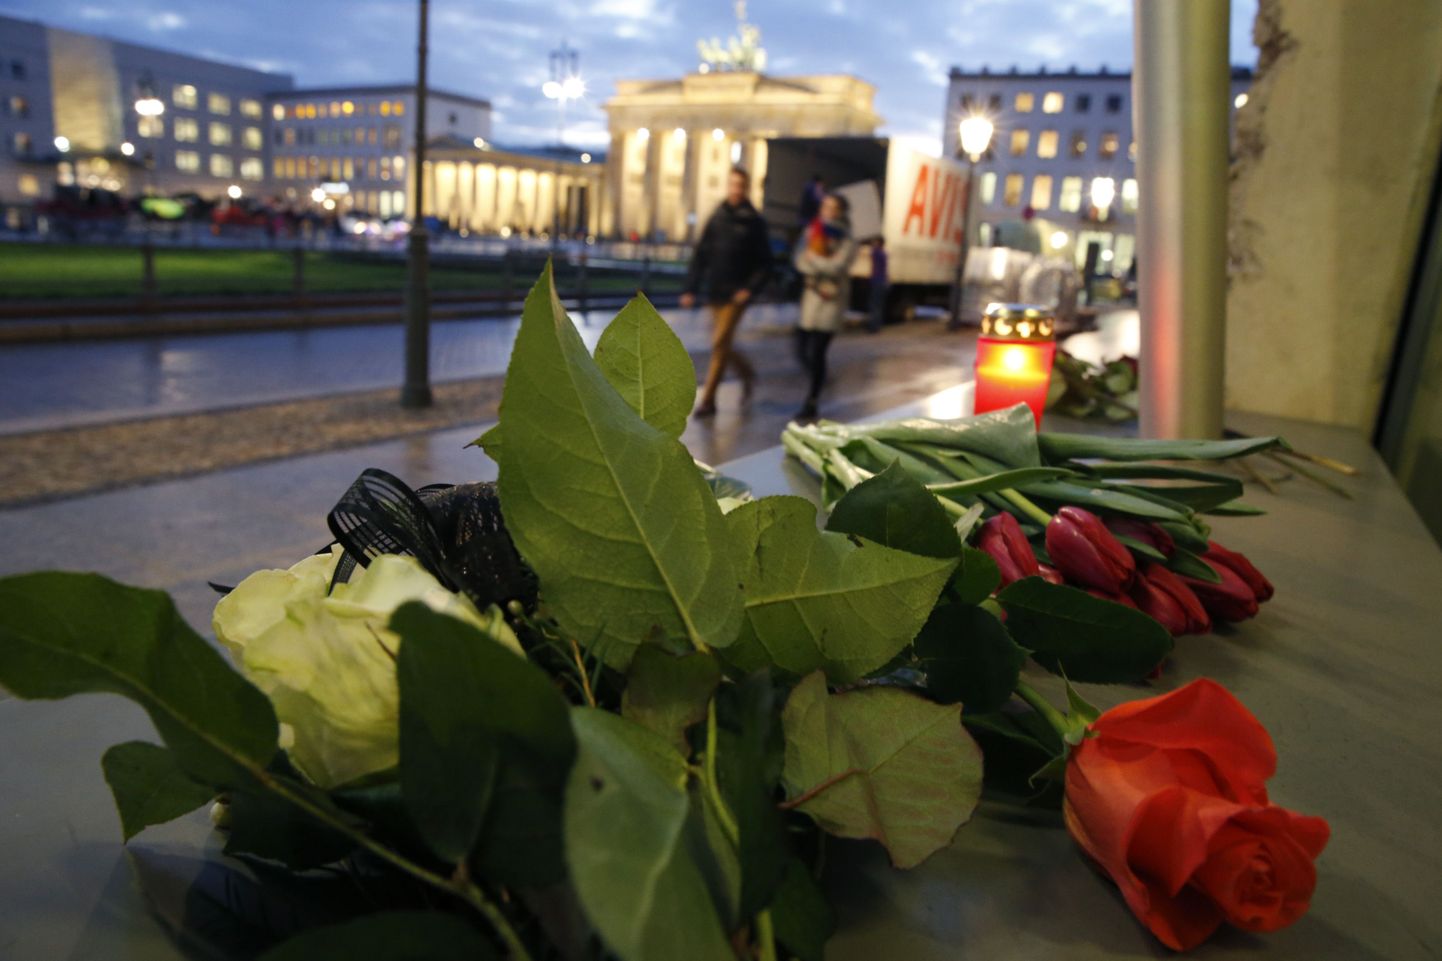 Lilled Charlie Hebdo toimetuse maja ees, kus hukkus täna 12 inimest.